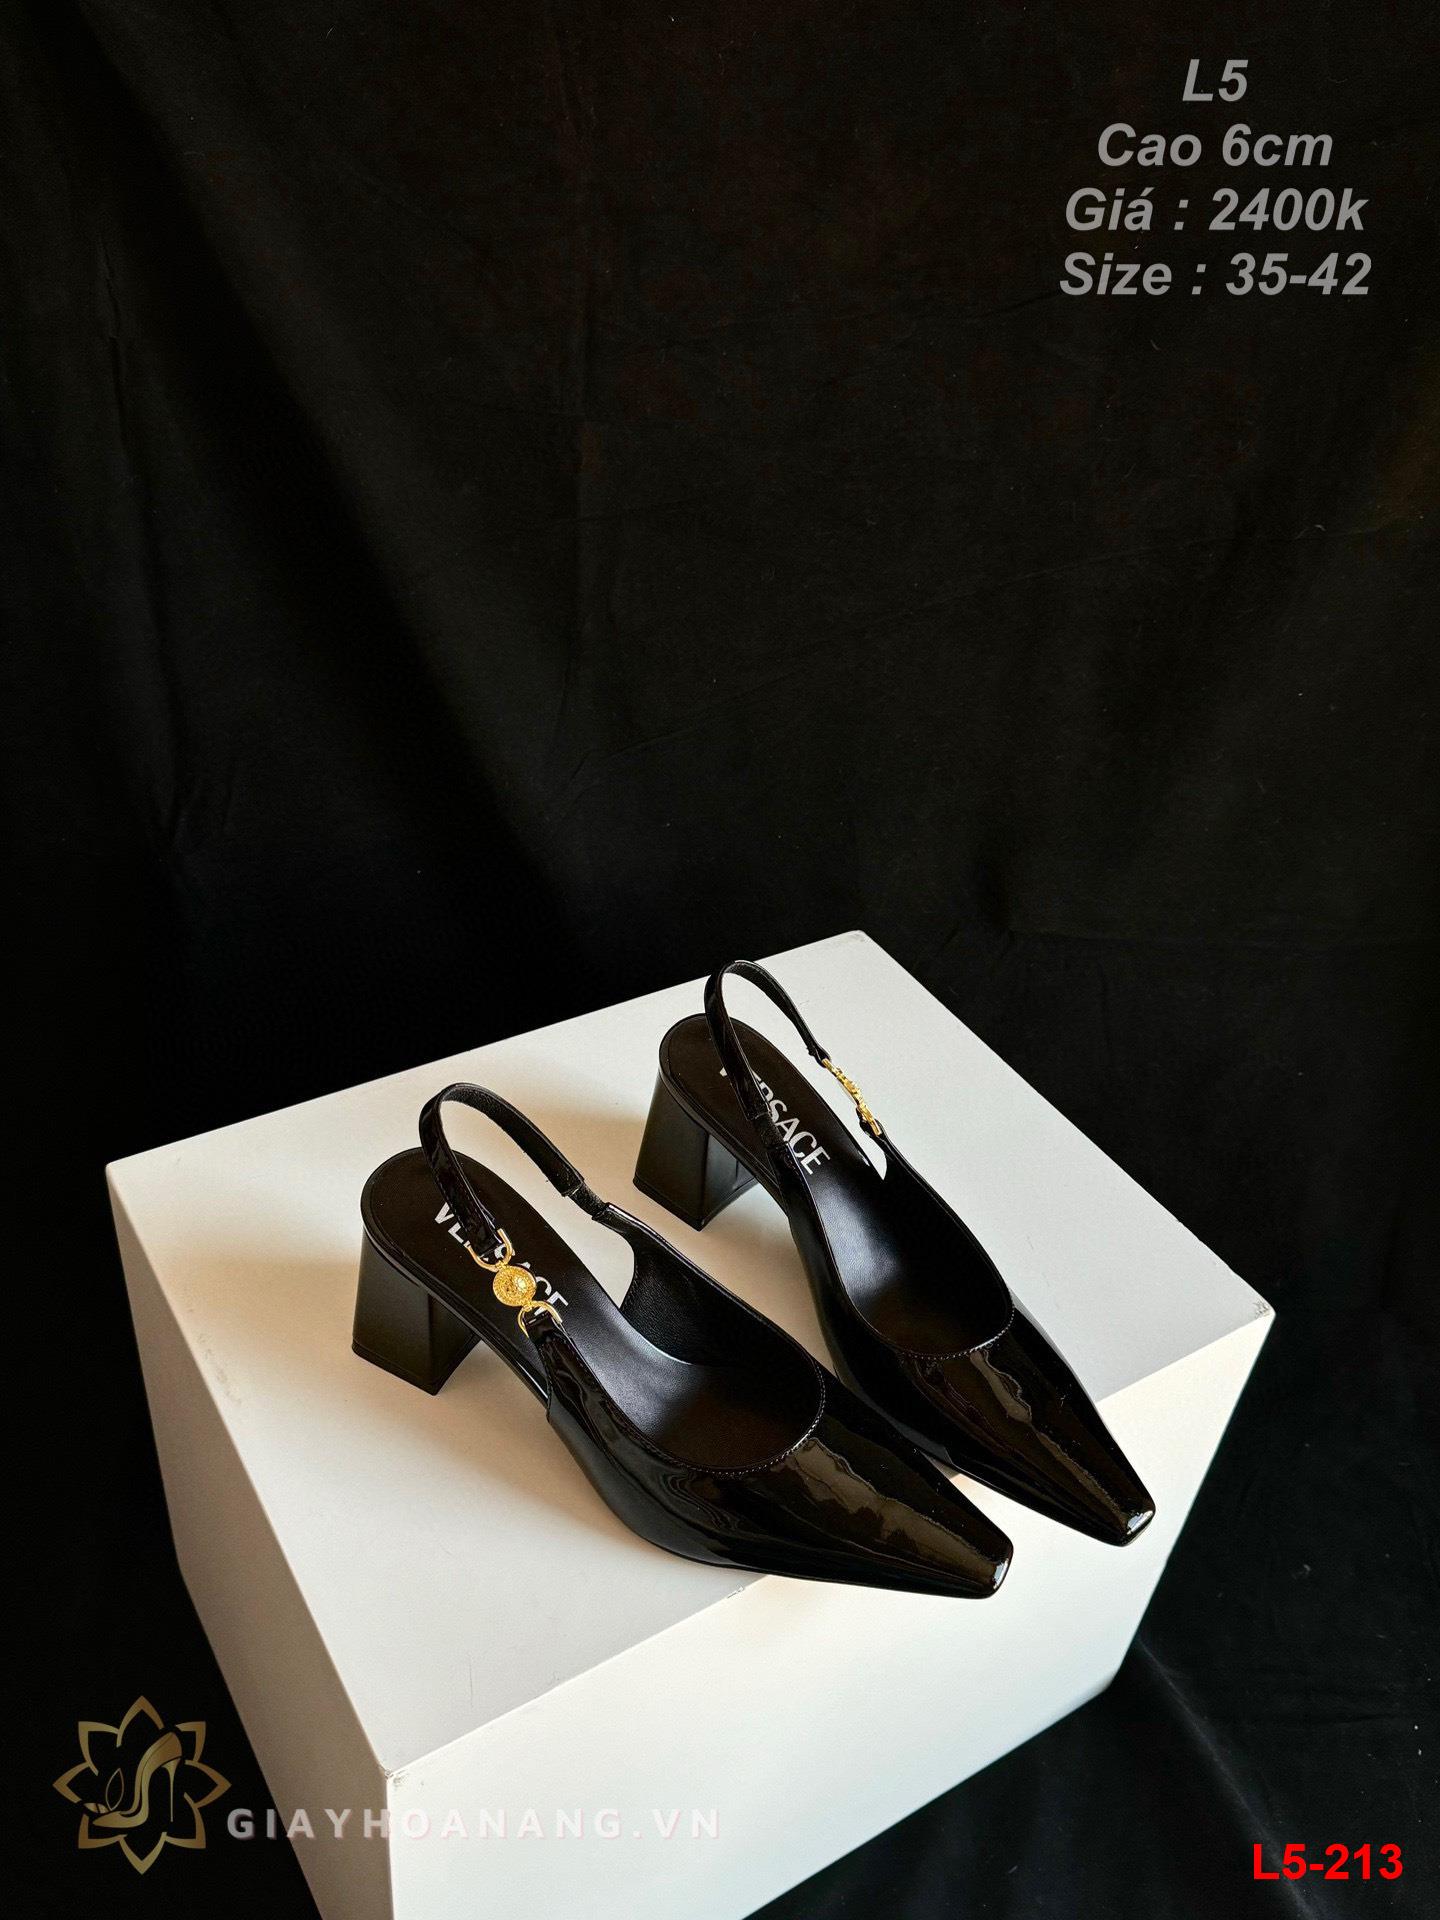 L5-213 Versace sandal cao 6cm siêu cấp